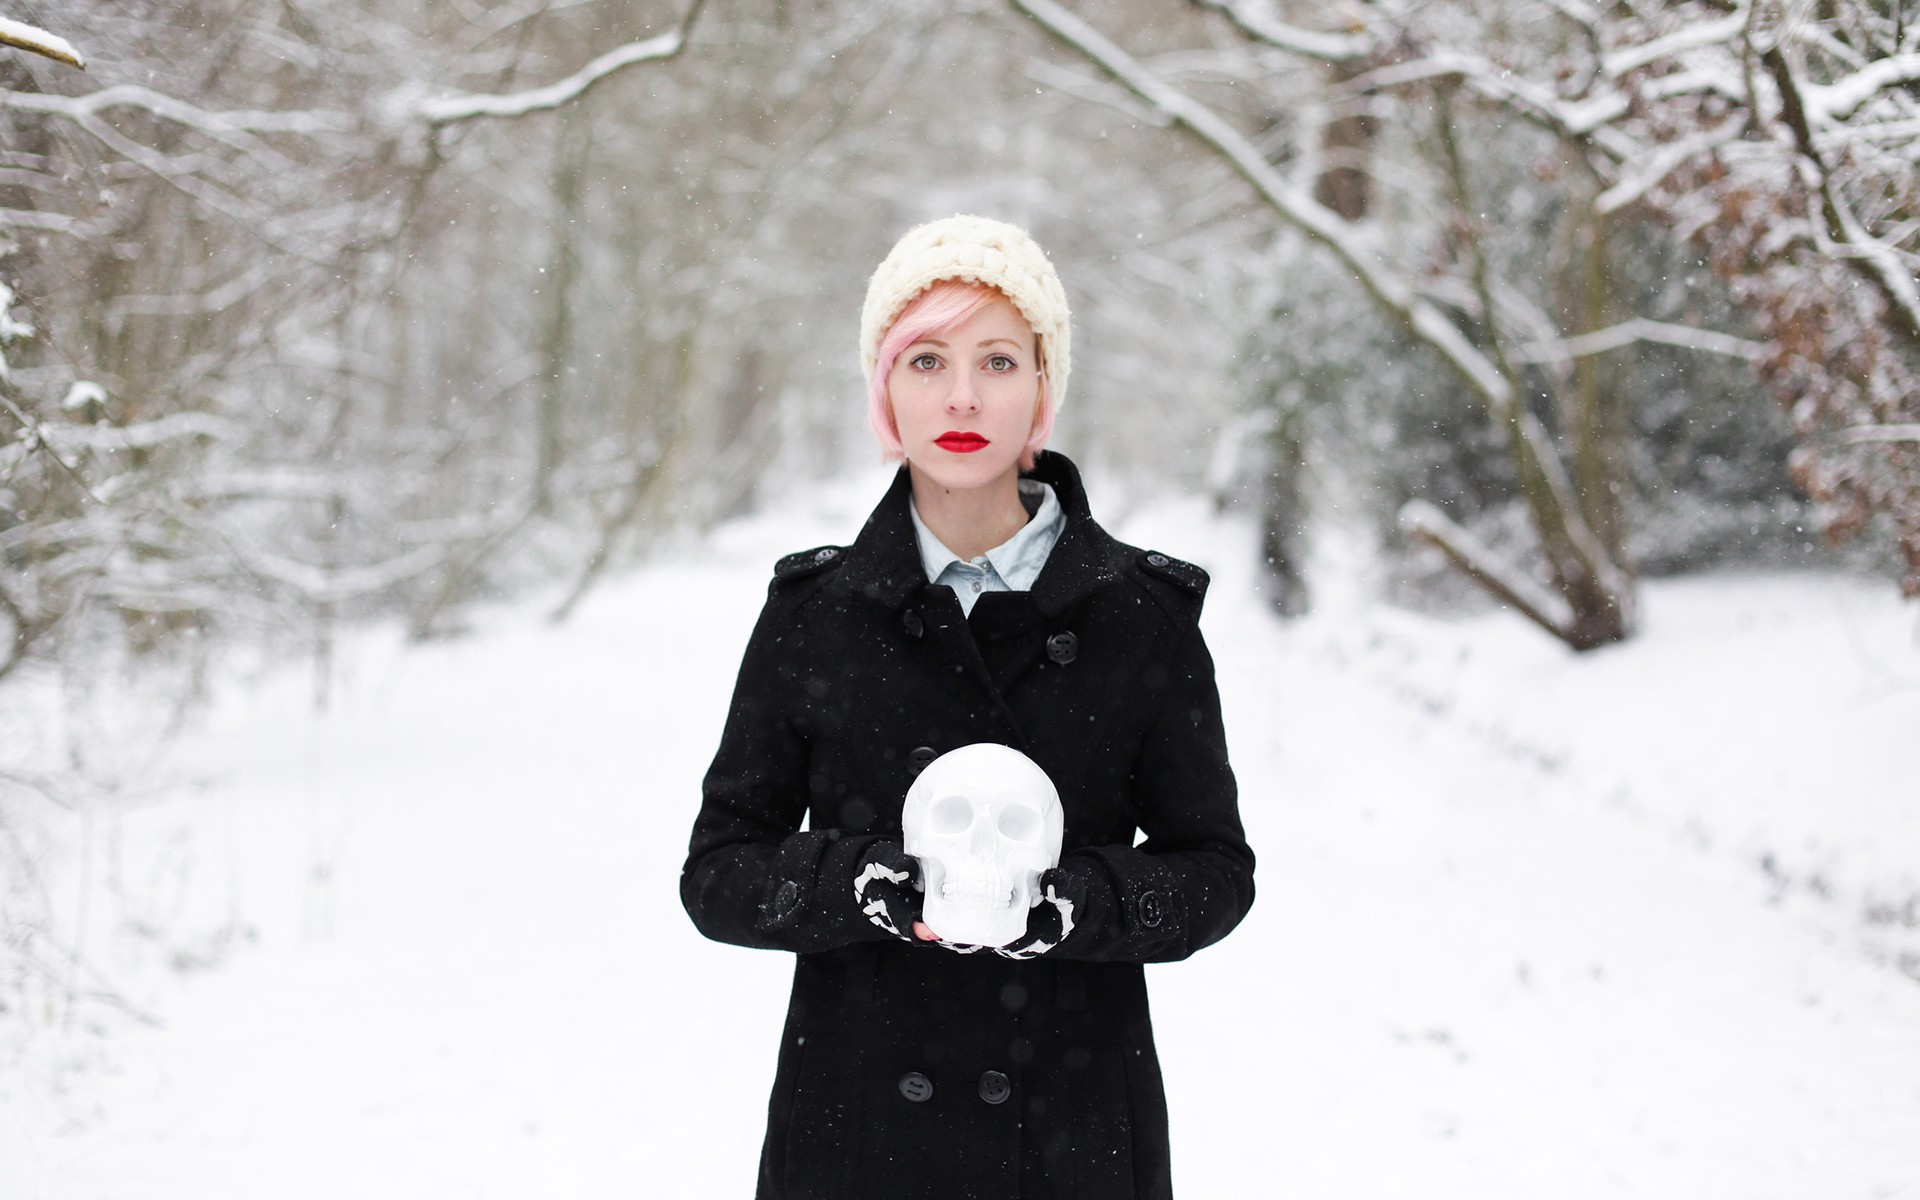 http://www.zastavki.com/pictures/originals/2014/Girls___Models_The_girl_s_skull_made_of_snow_071401_.jpg